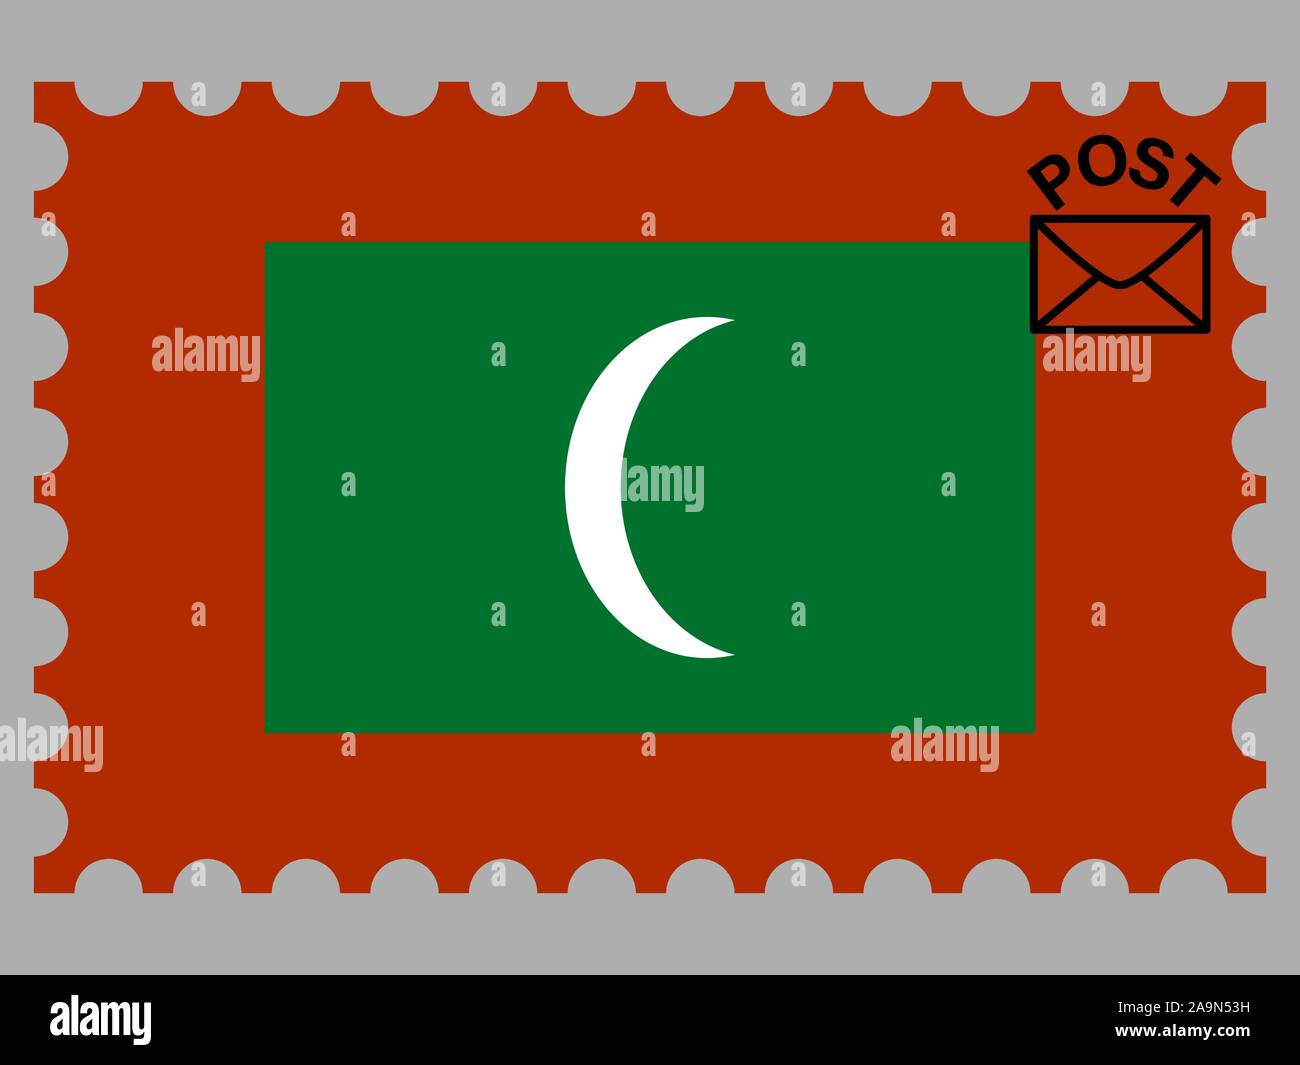 Drapeau national de la République des Maldives. couleurs d'origine et de proportion. Illustration vectorielle, simplement, en provenance de pays. Illustration de Vecteur